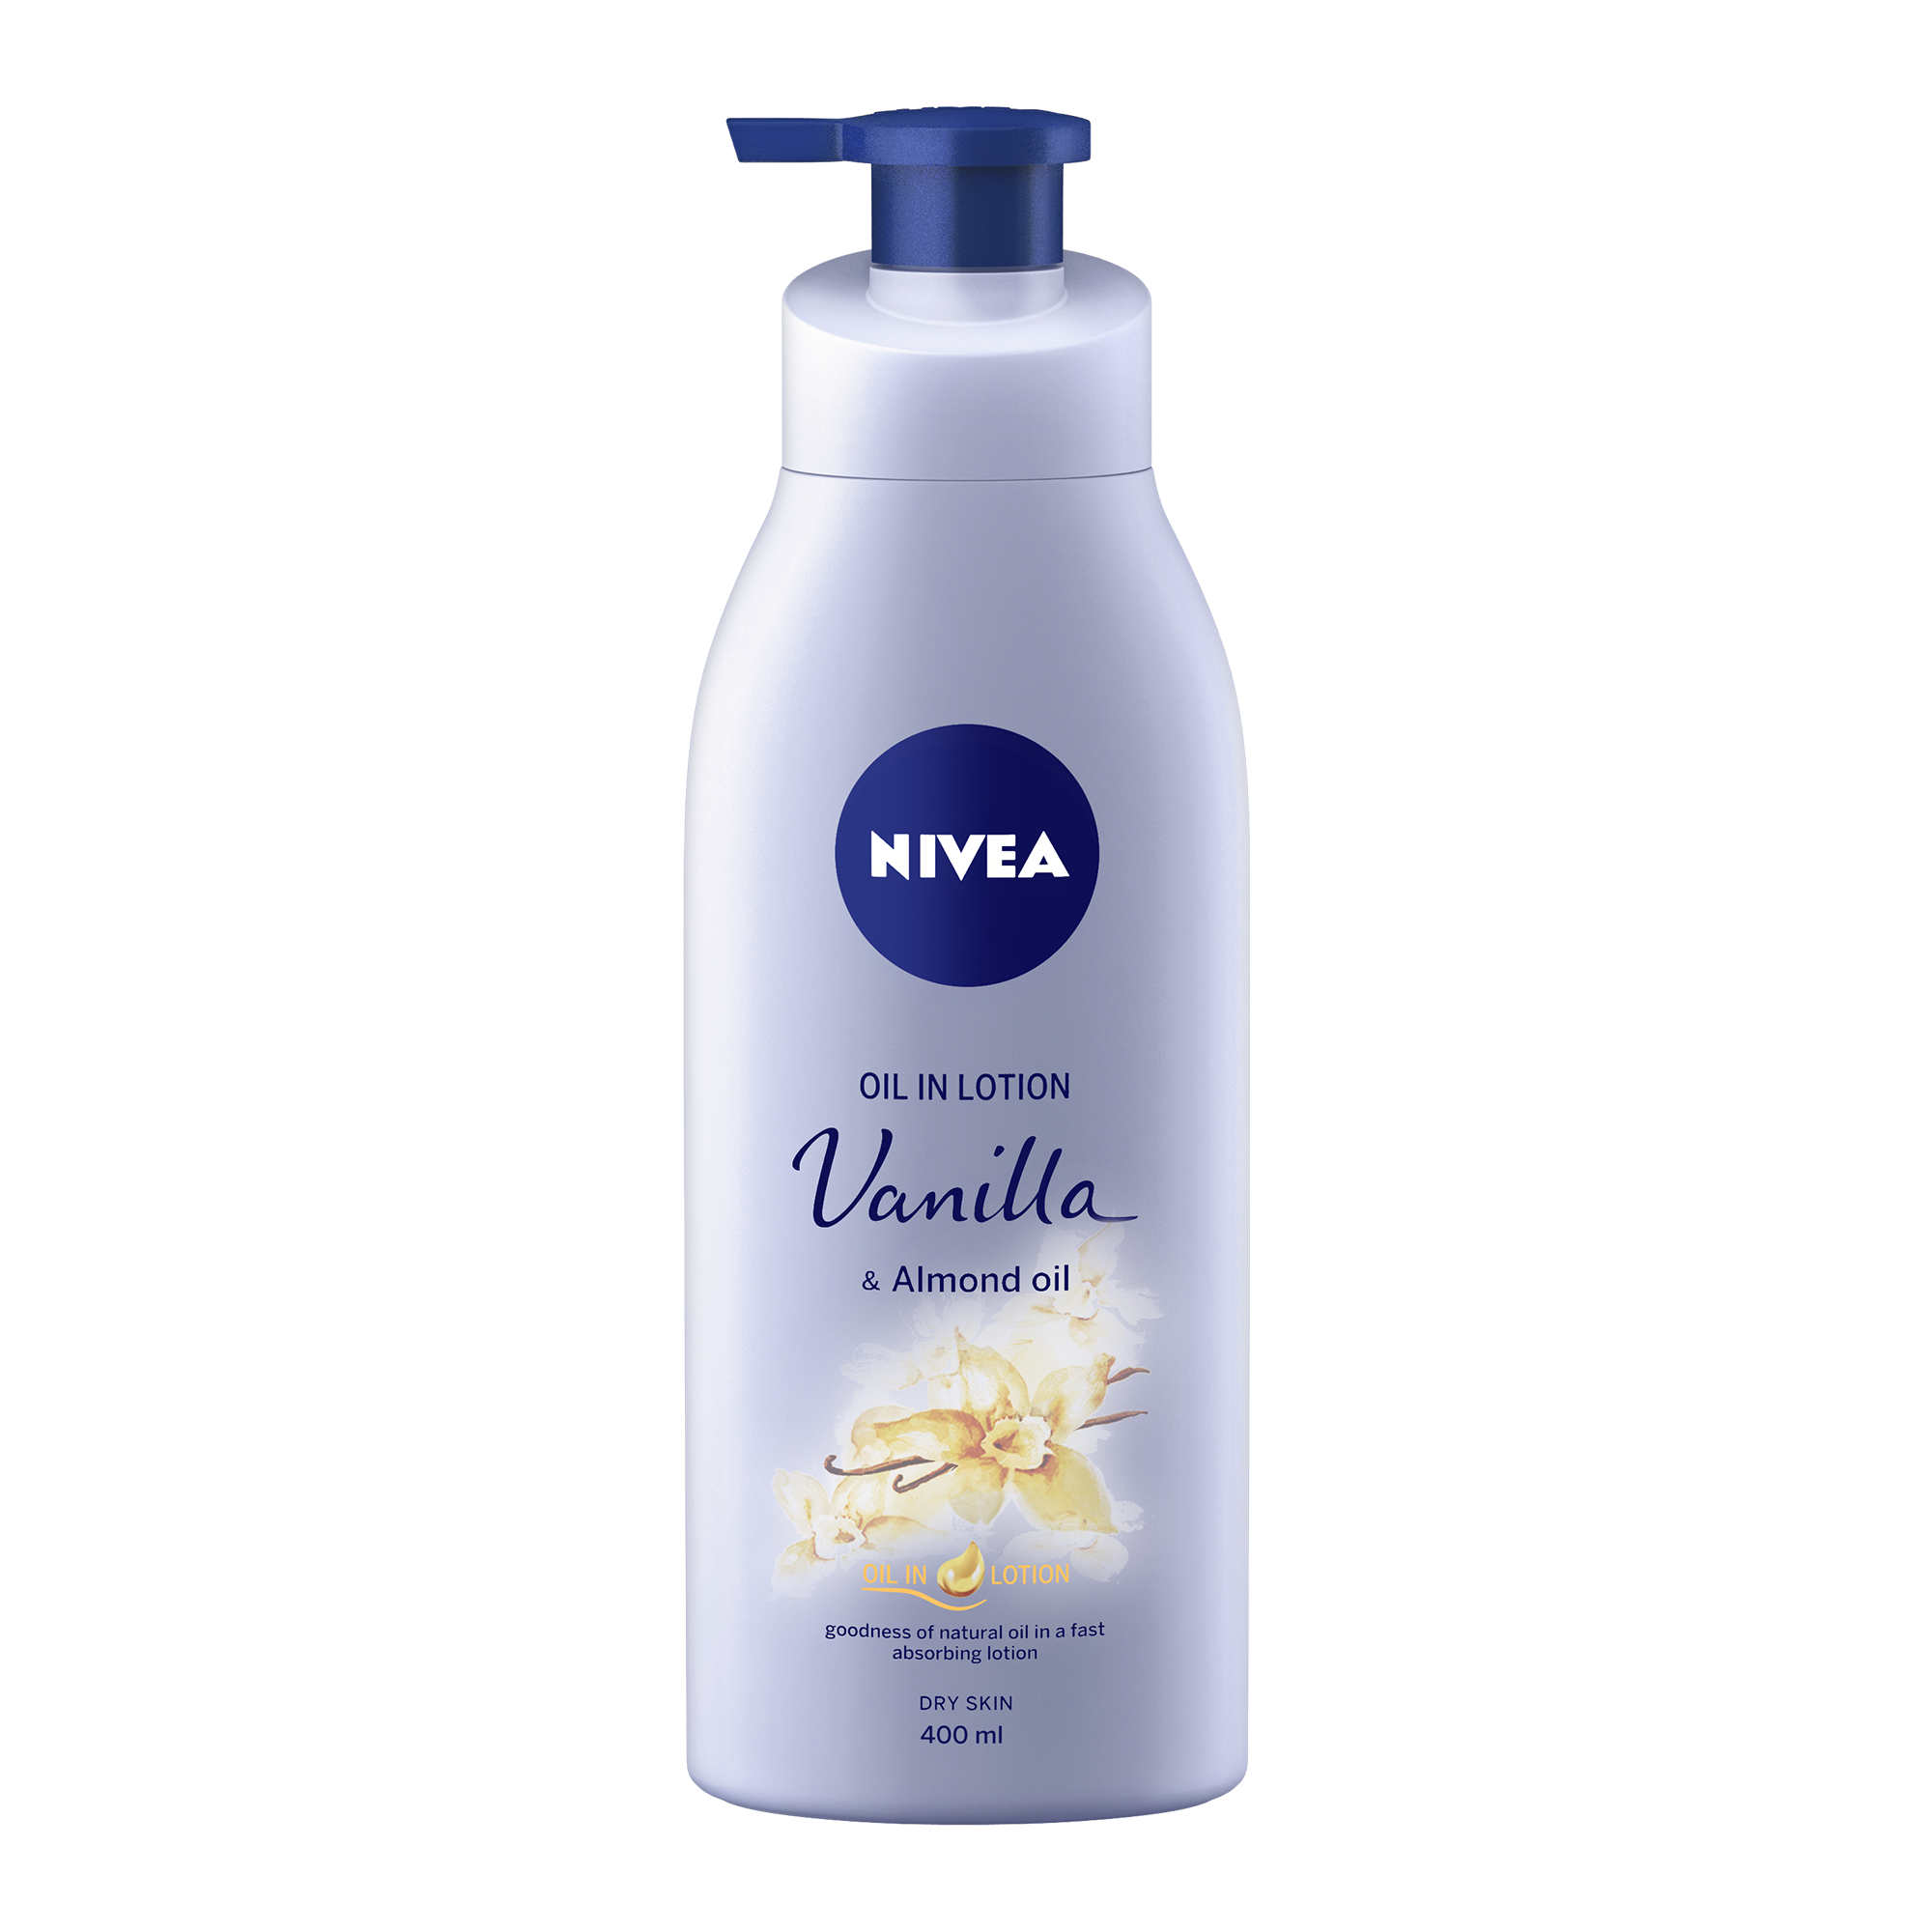 Nivea Oil in Lotion Vanilla & Almond Oil Body Lotion (400 ml) Nivea